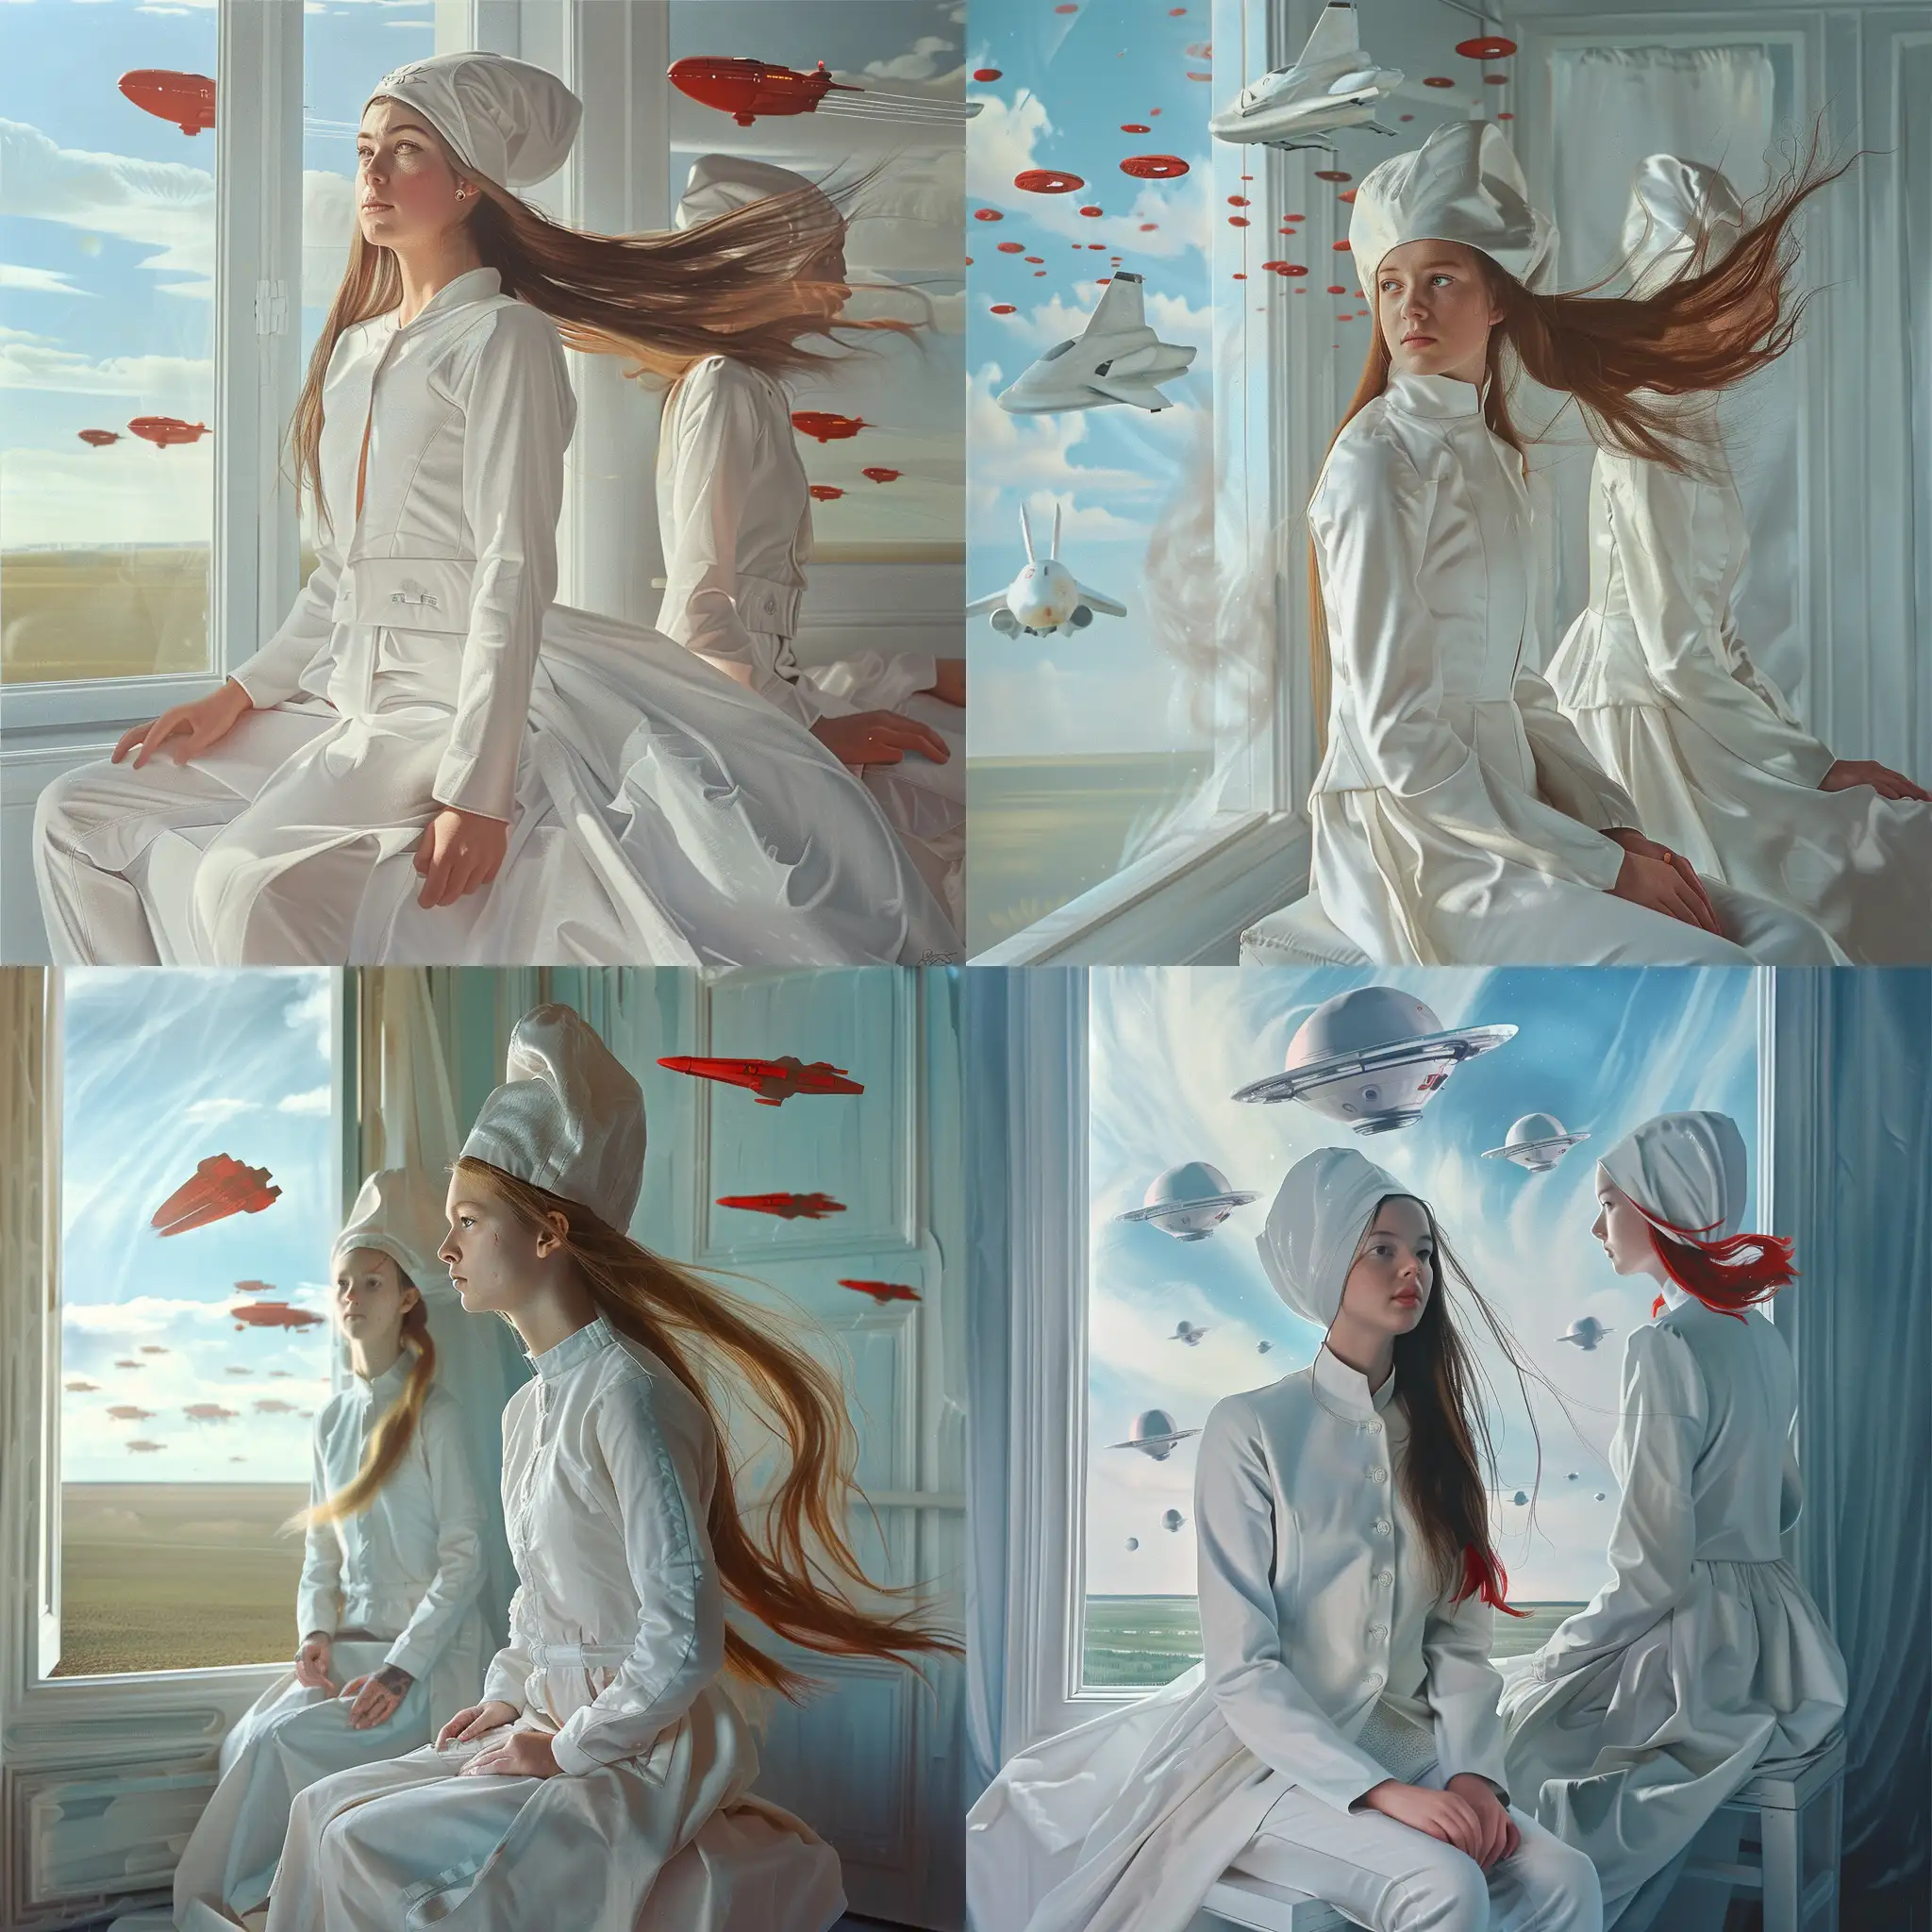 Фантастическая планета в стилистике фильма Дюна, девушка сидит  к комнате в белом костюме, развевающиеся волосы, в открытом окне проплывают космические корабли, 8k, плёночная фотография, ультодетализация, рассеяние света, резкий фокус, высокая детализация 